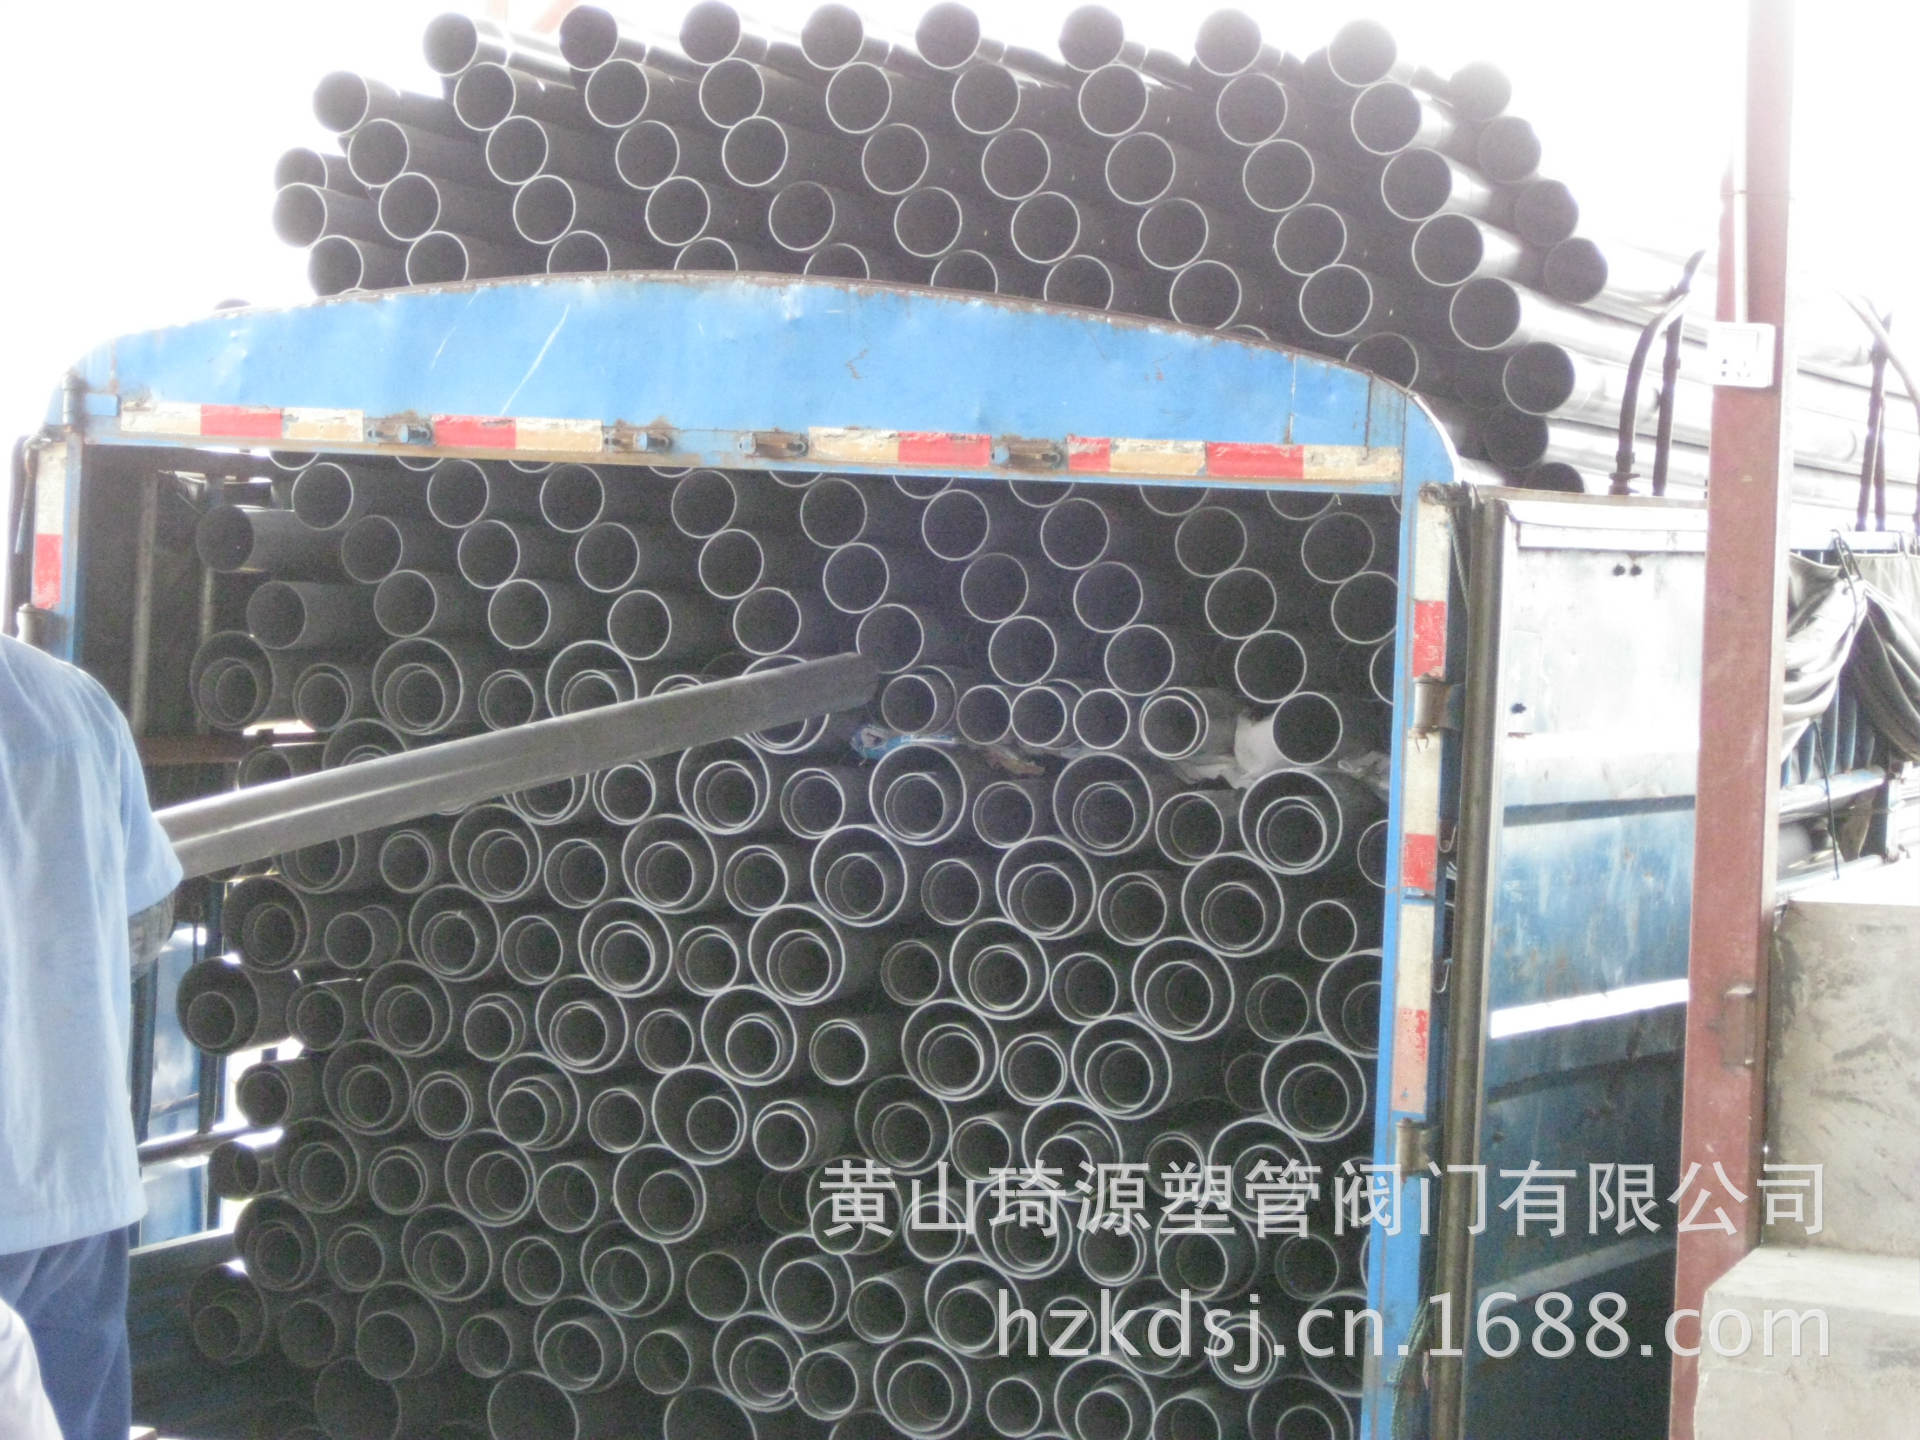 内蒙古560mmupvc管批发价,耐酸耐腐蚀排水管